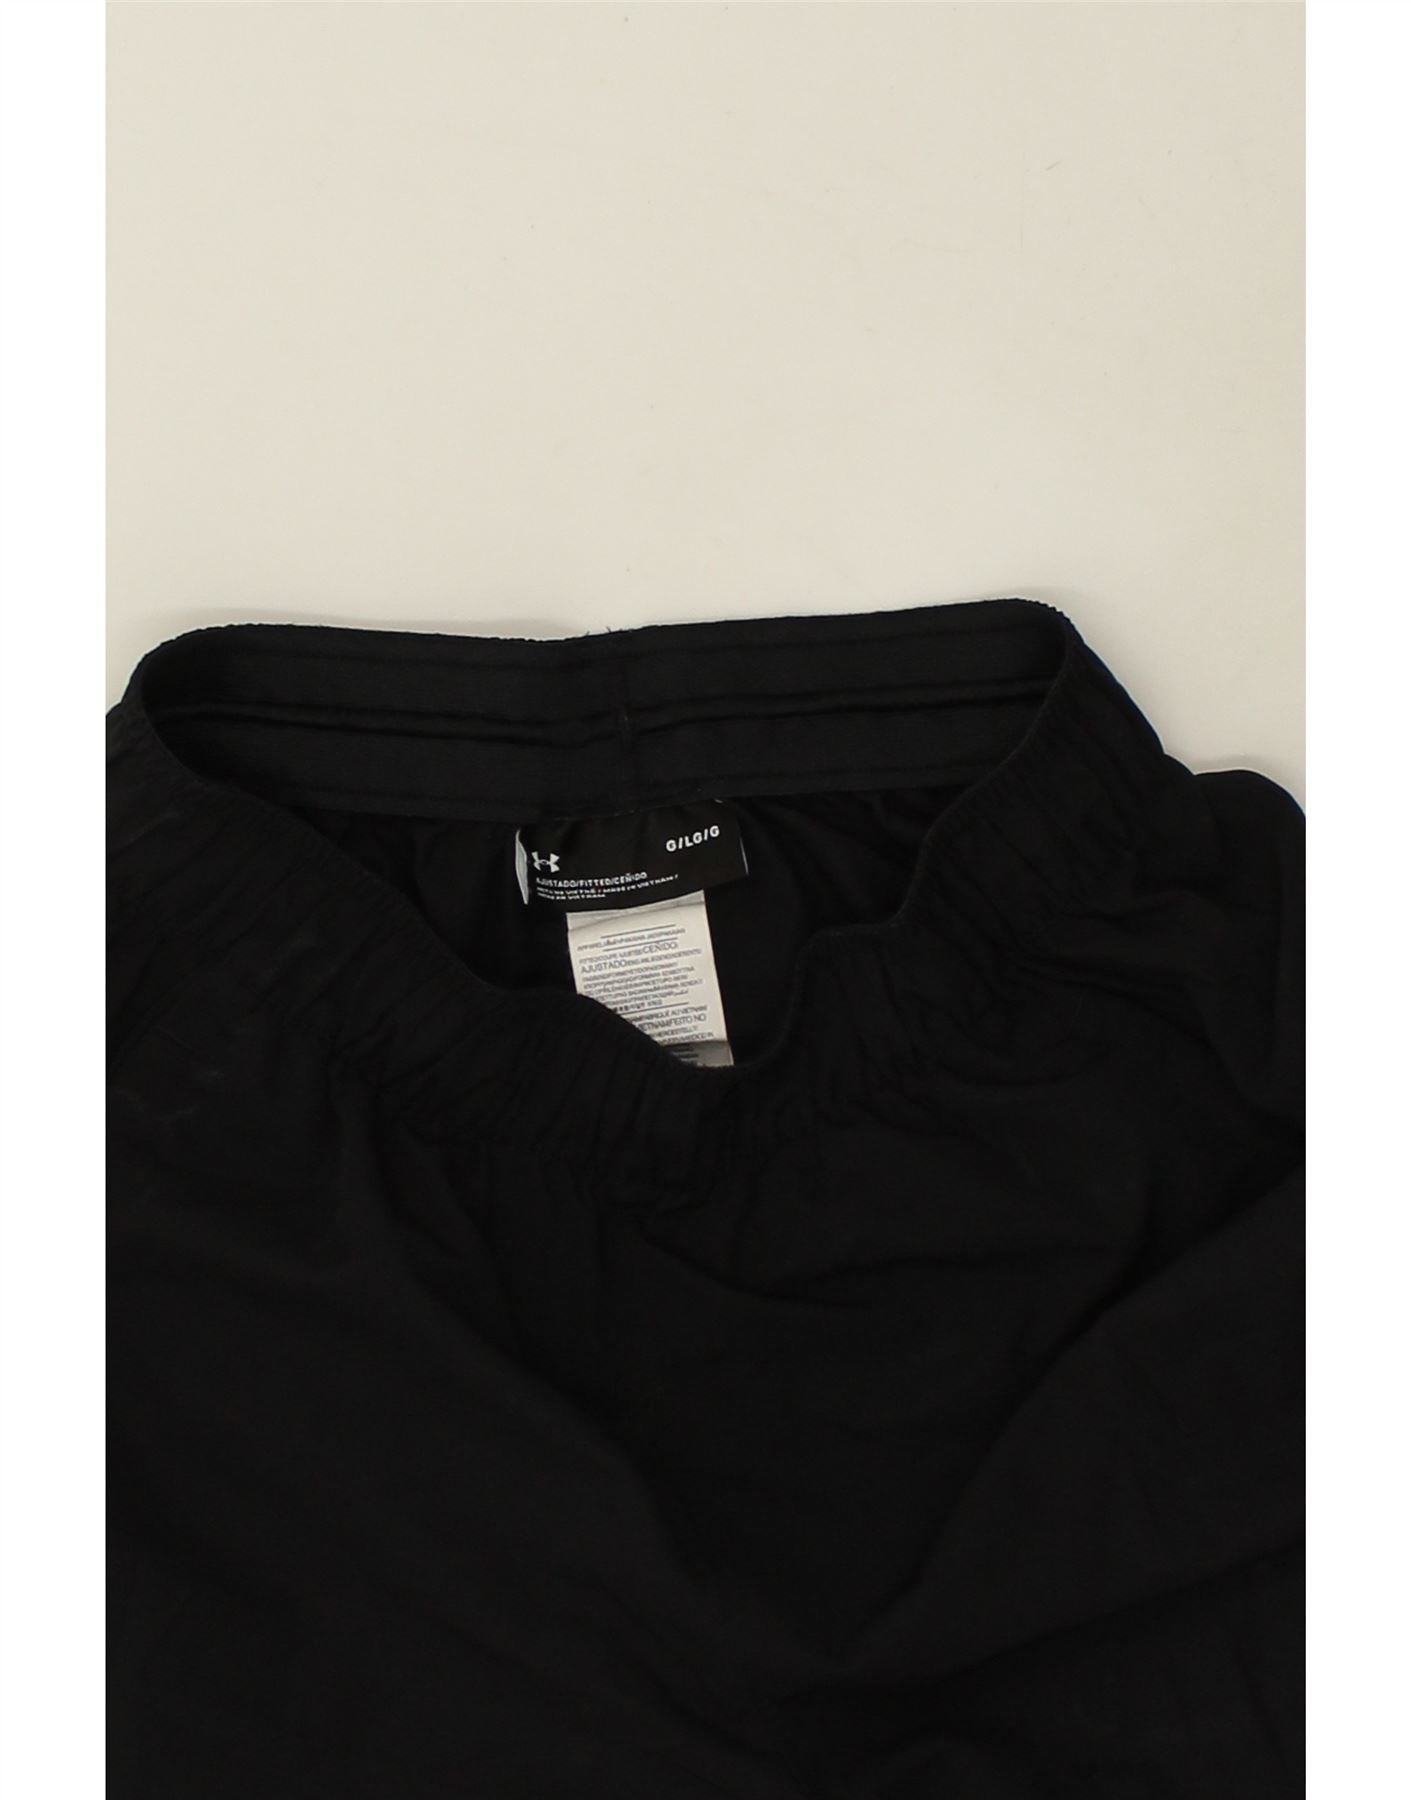 UNDER ARMOR Мужские спортивные брюки большого размера из полиэстера черного цвета | Винтаж под доспехами | Бережливость | Подержанная броня Under Armour | Одежда б/у | Мессина Хембри